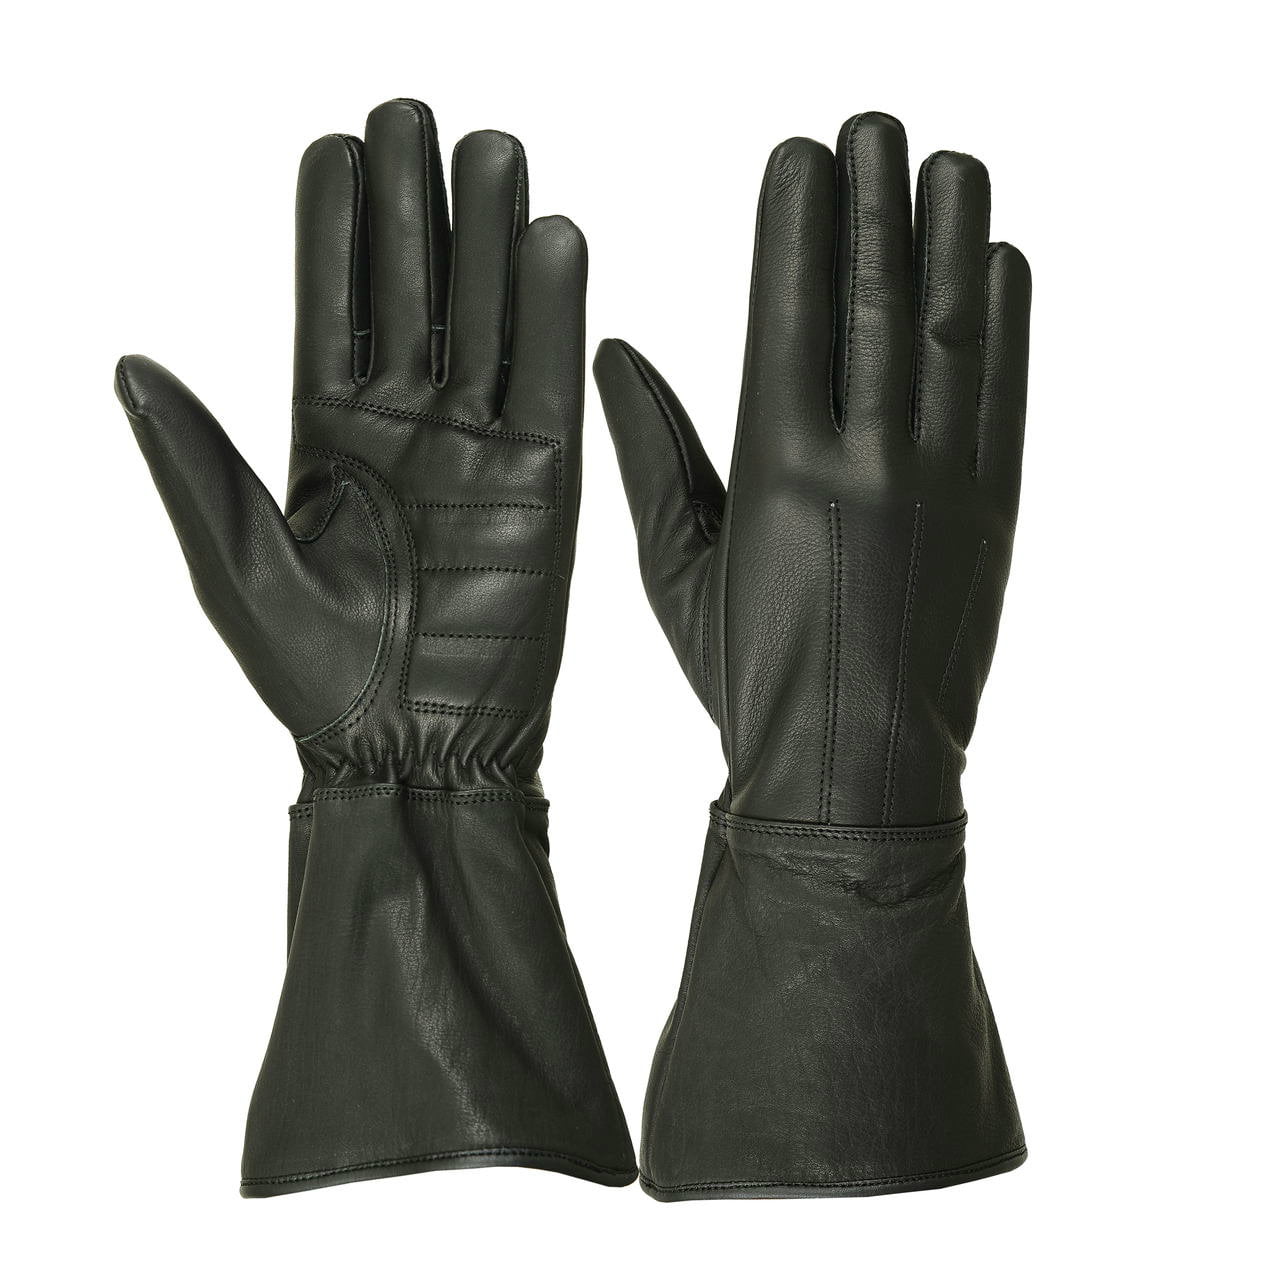 Ladies Deerskin Gauntlet Glove